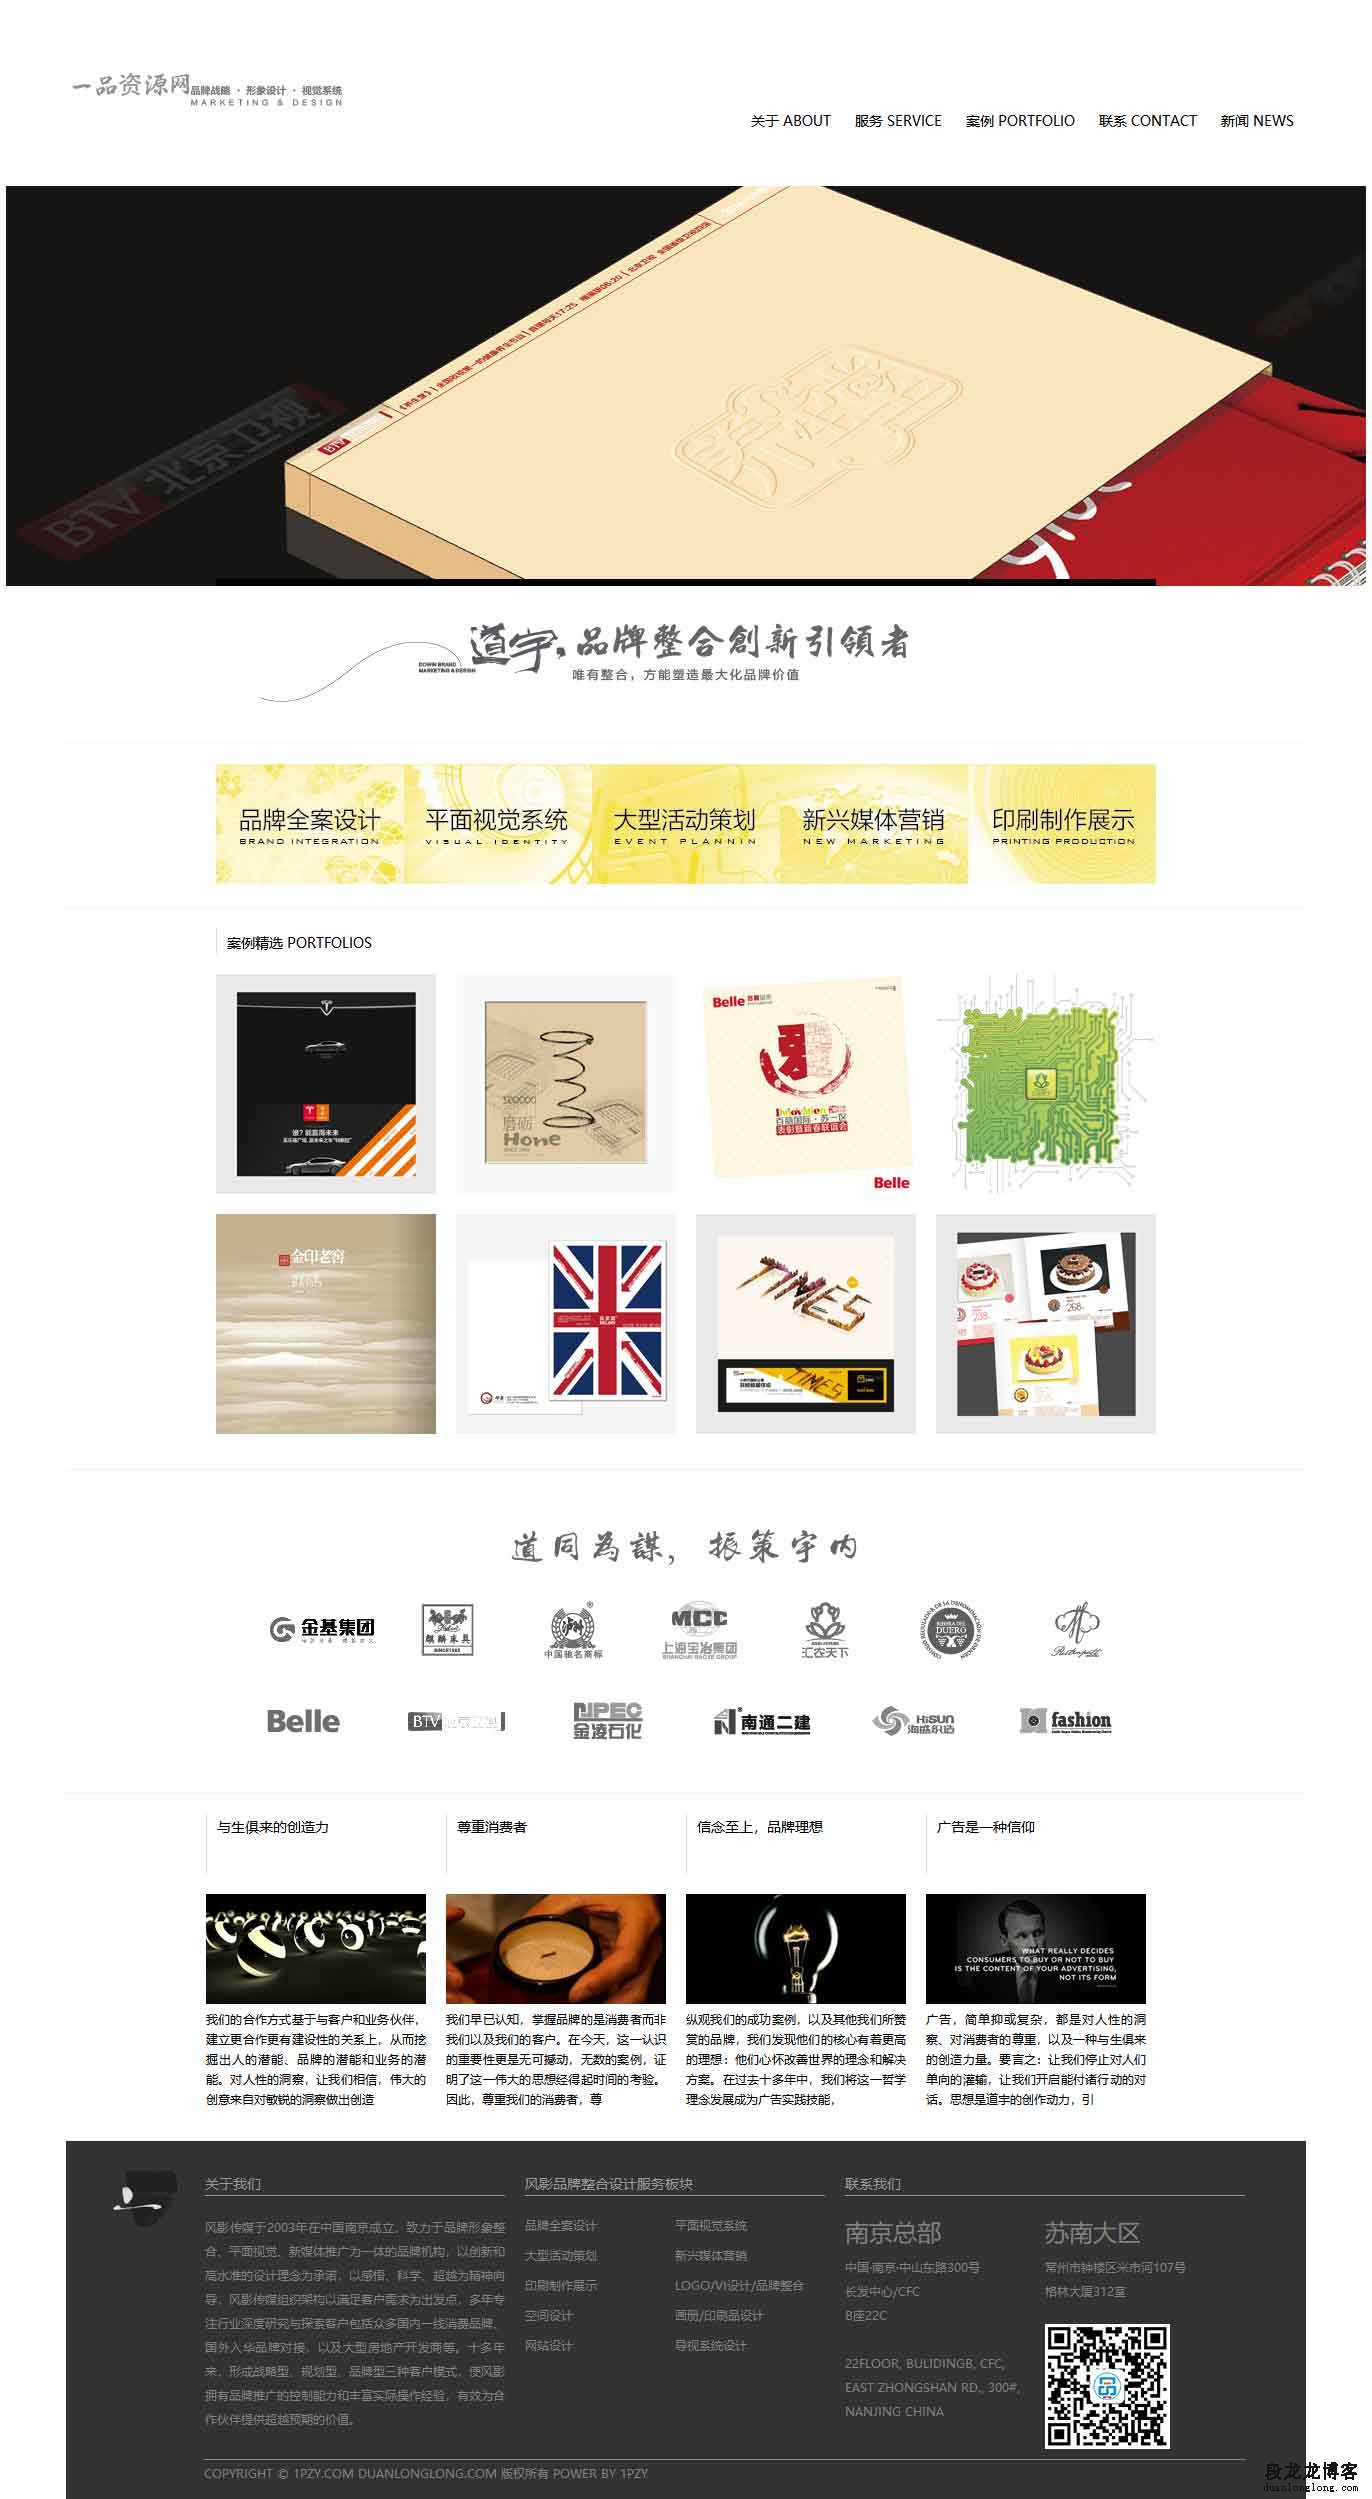 dedecms广告品牌设计企业公司织梦整站网站模板程